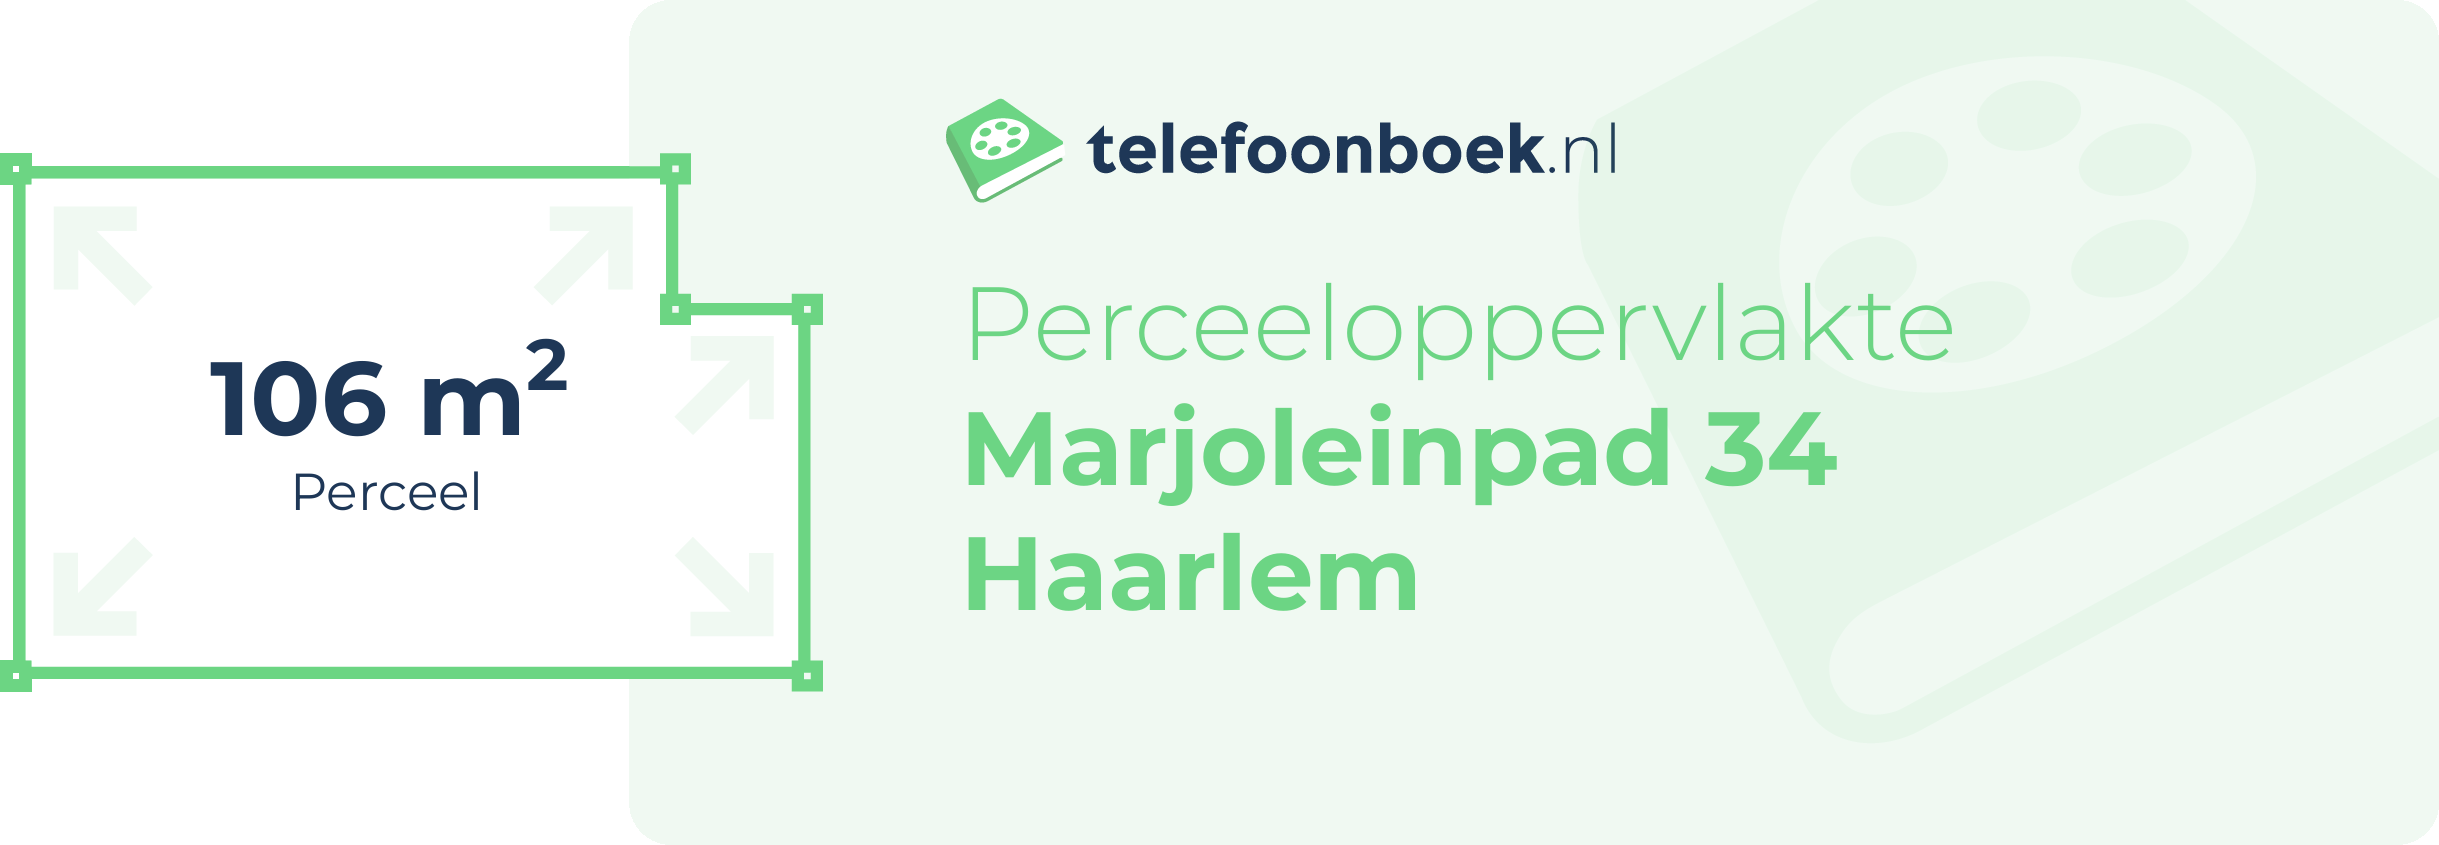 Perceeloppervlakte Marjoleinpad 34 Haarlem